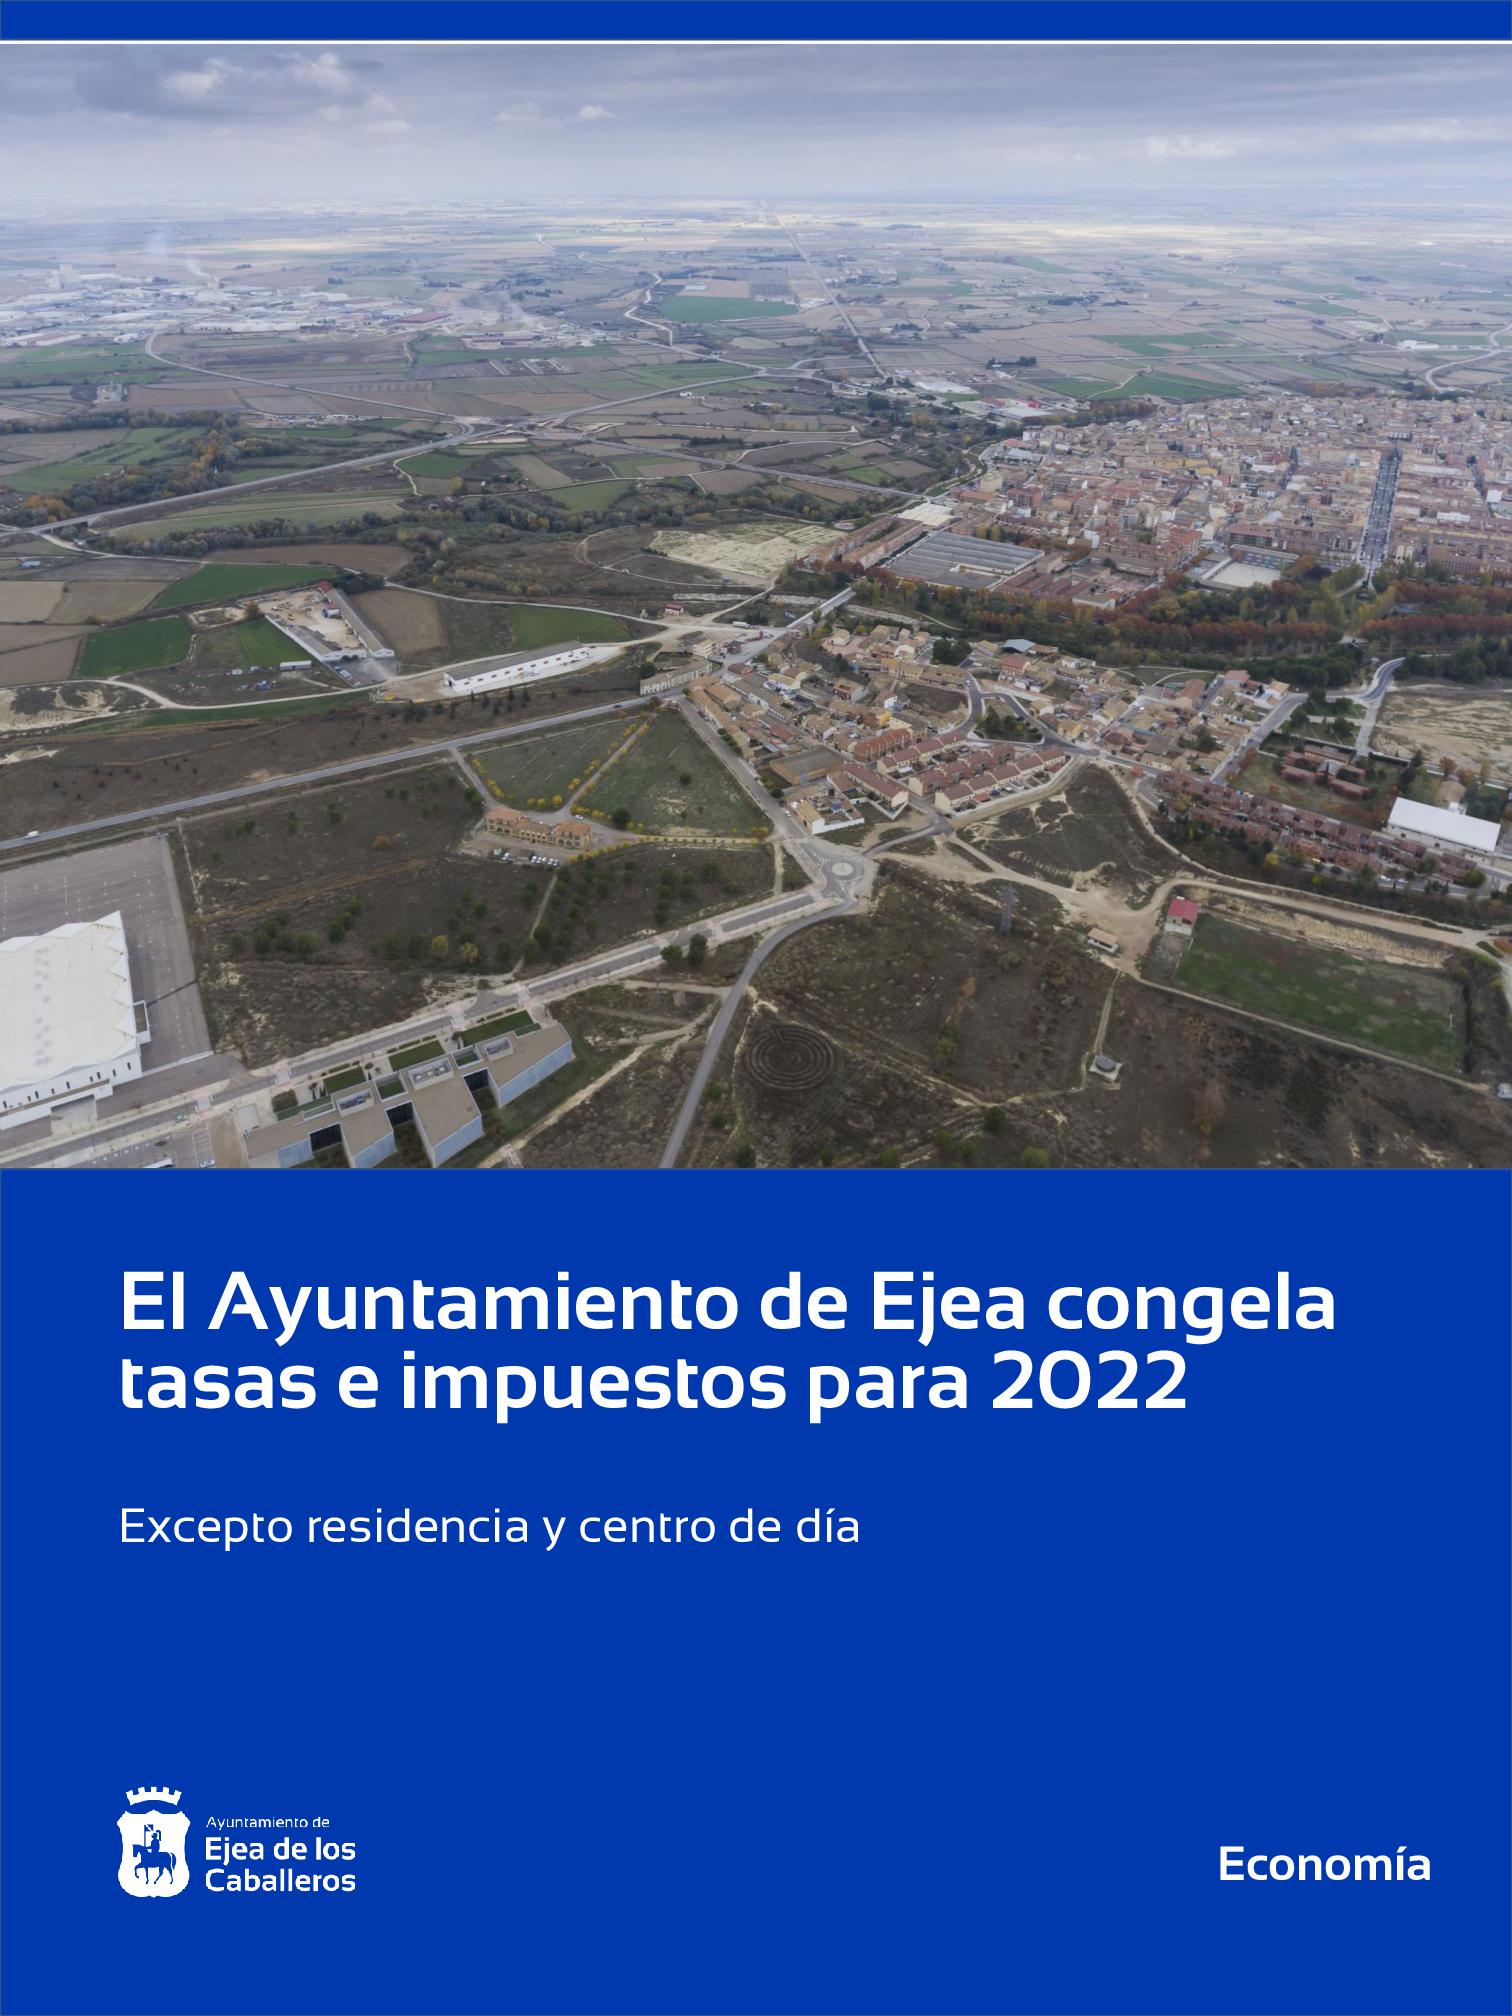 En este momento estás viendo El Ayuntamiento de Ejea congelará en 2022 las tasas e impuestos, salvo residencia y centro de día